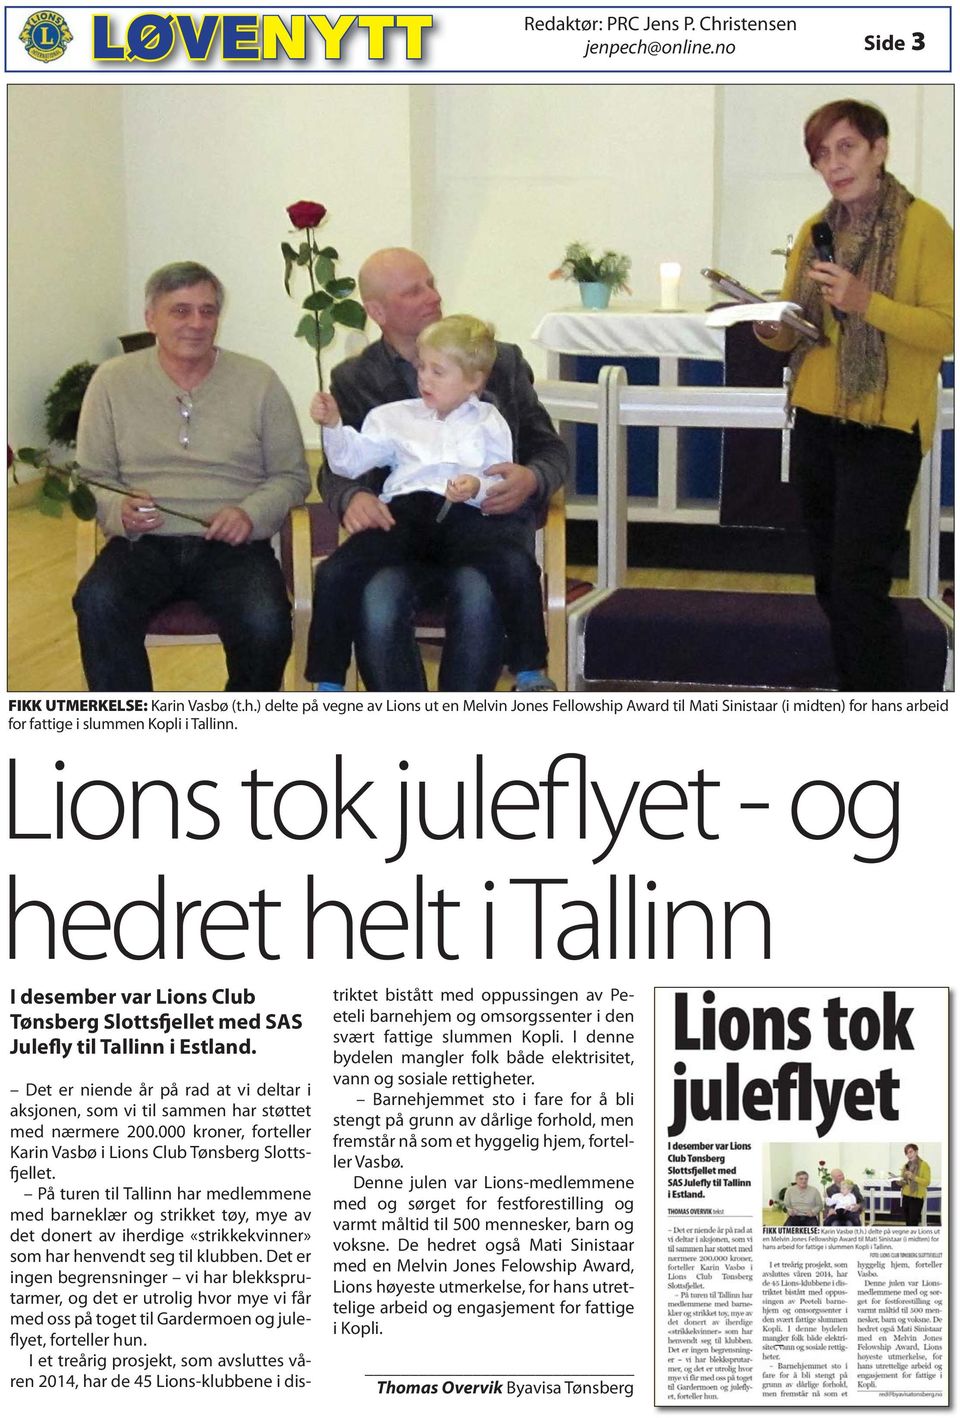 Det er niende år på rad at vi deltar i aksjonen, som vi til sammen har støttet med nærmere 200.000 kroner, forteller Karin Vasbø i Lions Club Tønsberg Slottsfjellet.